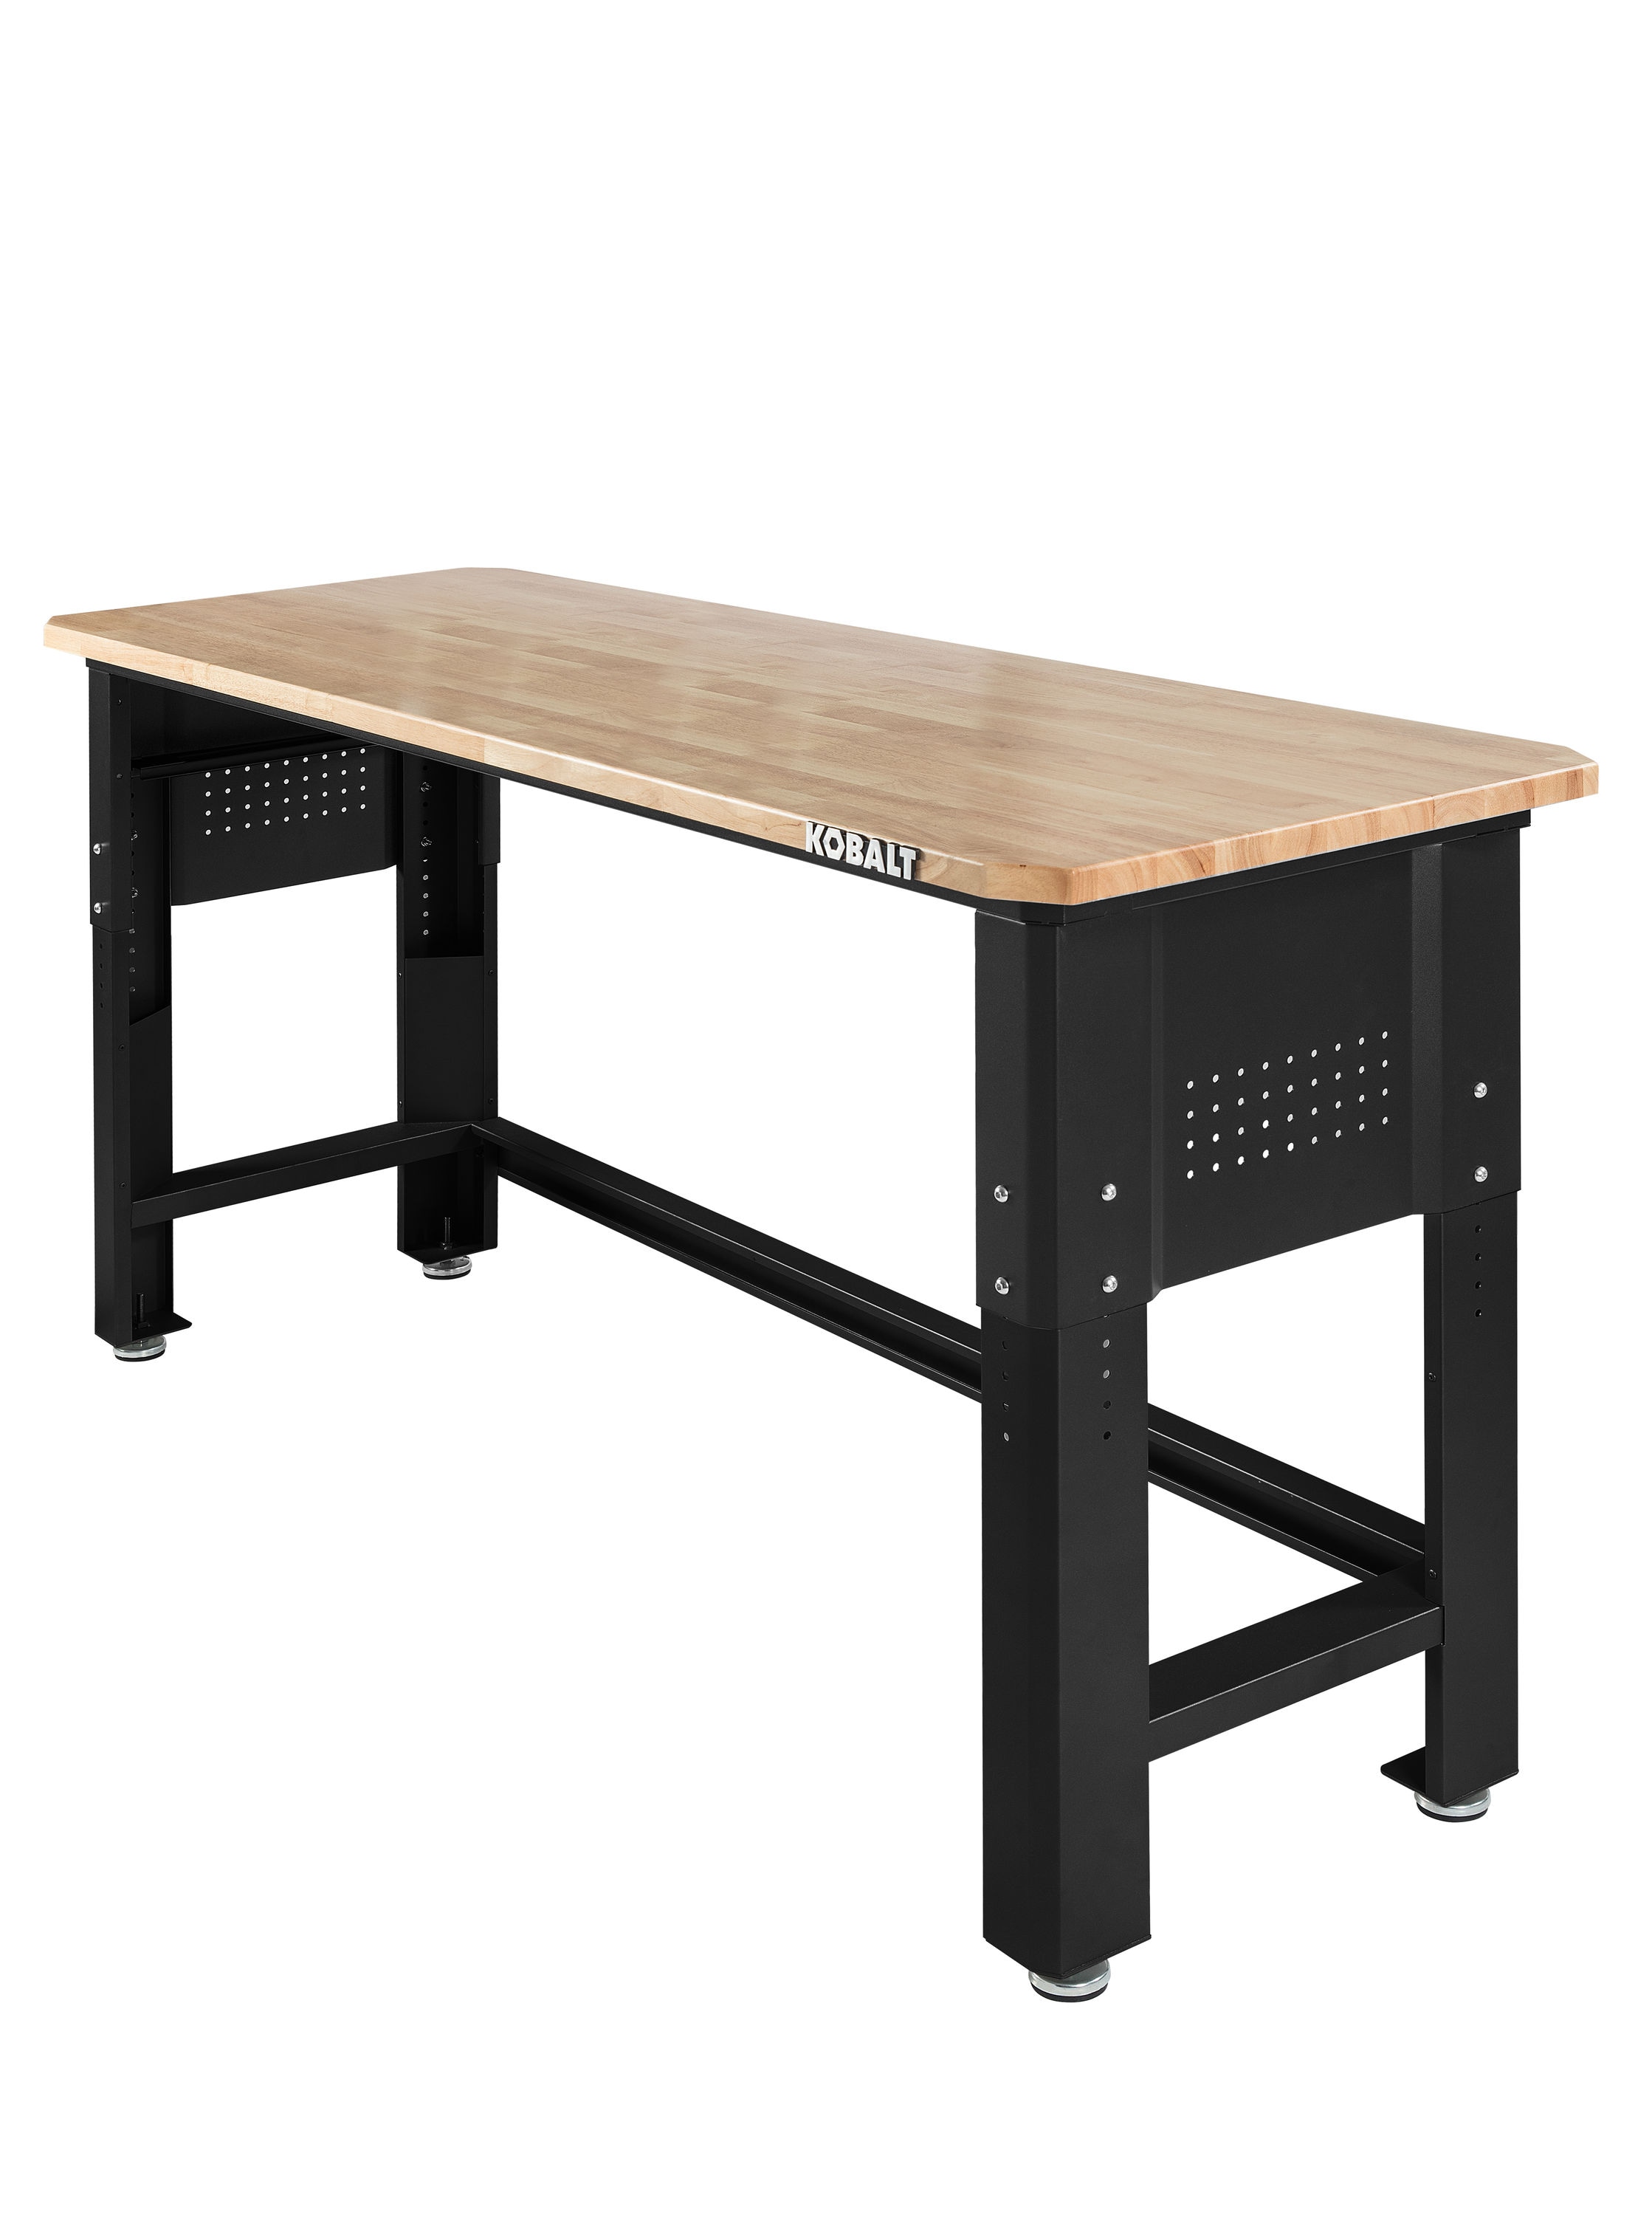 Homemade Adjustable Height Table  Adjustable height table, Woodworking  stand, Woodworking bench